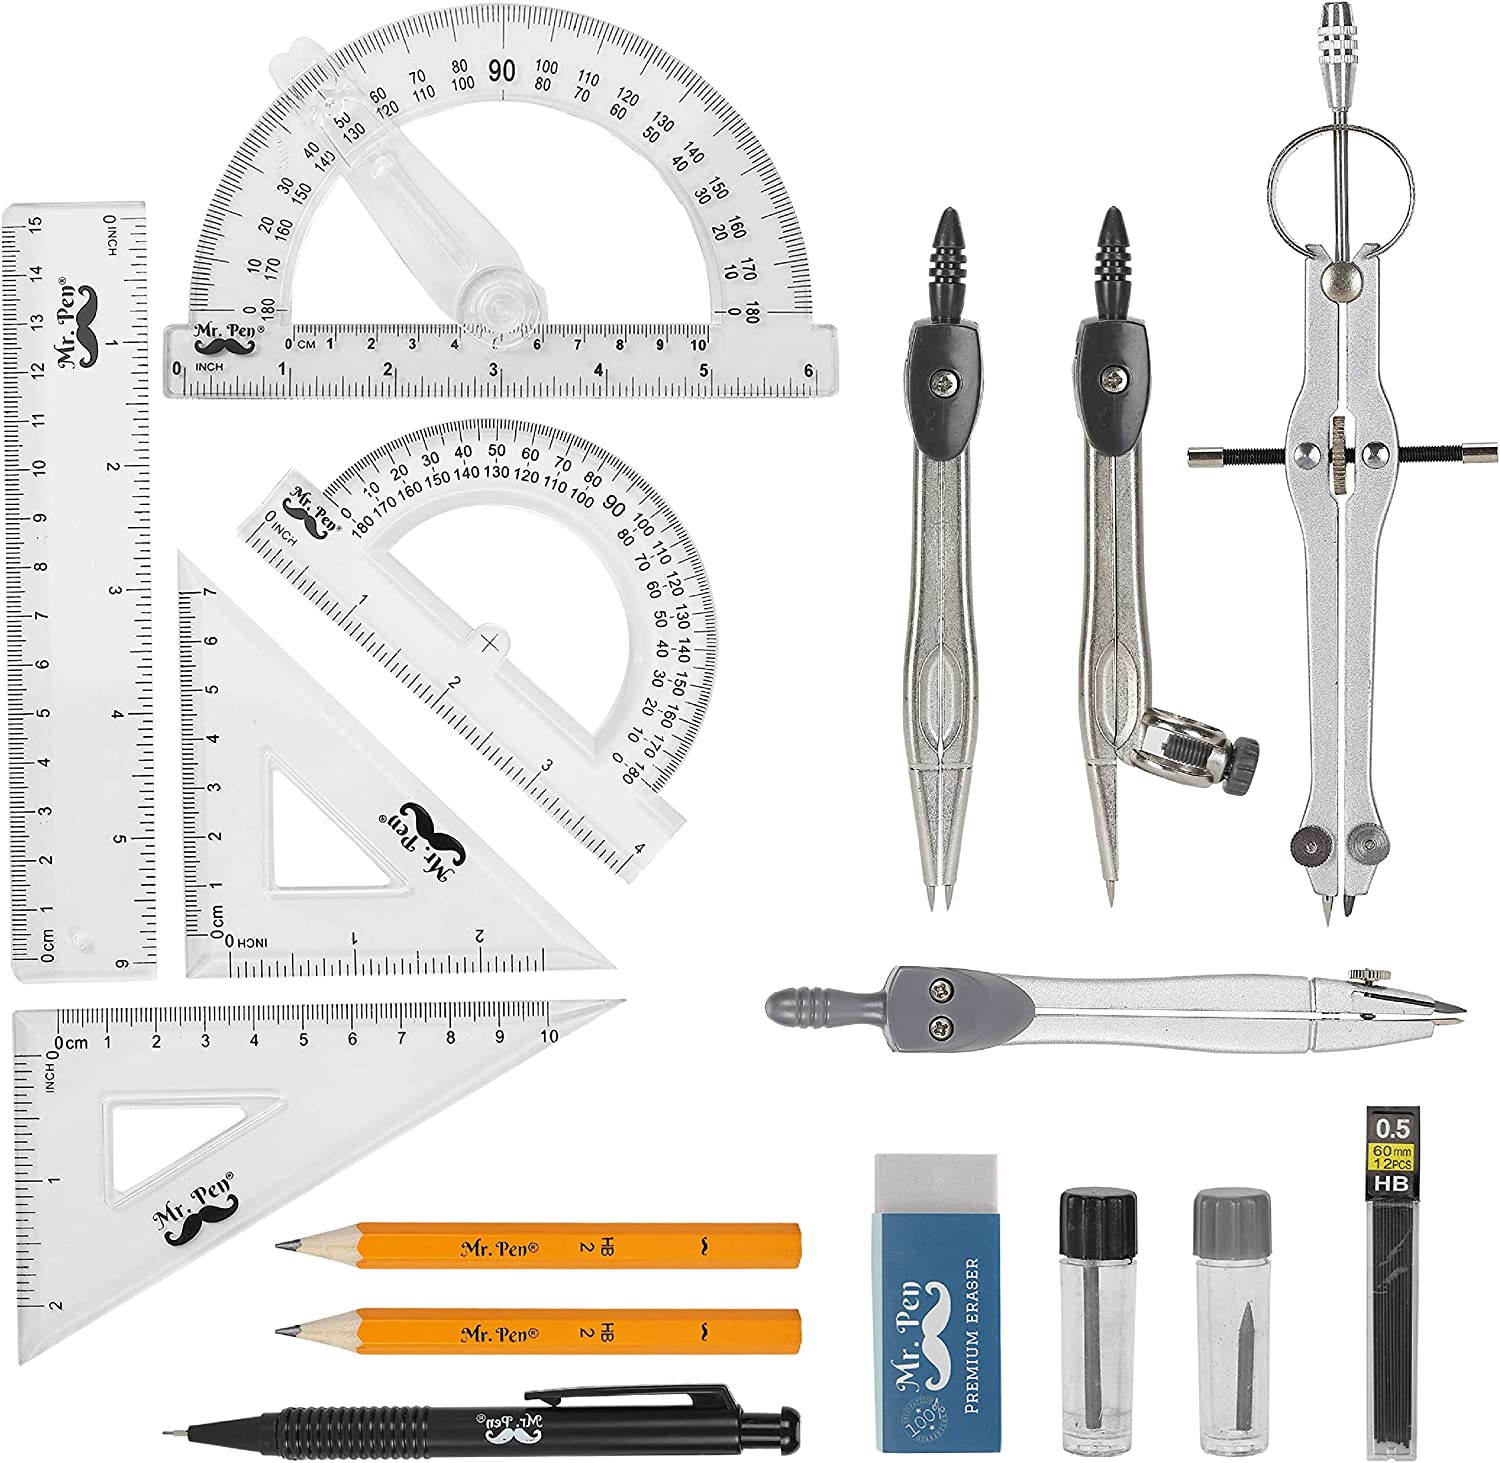 Mr. Pen Metal Compass & Swing Arm Protractor Set, 15-Piece